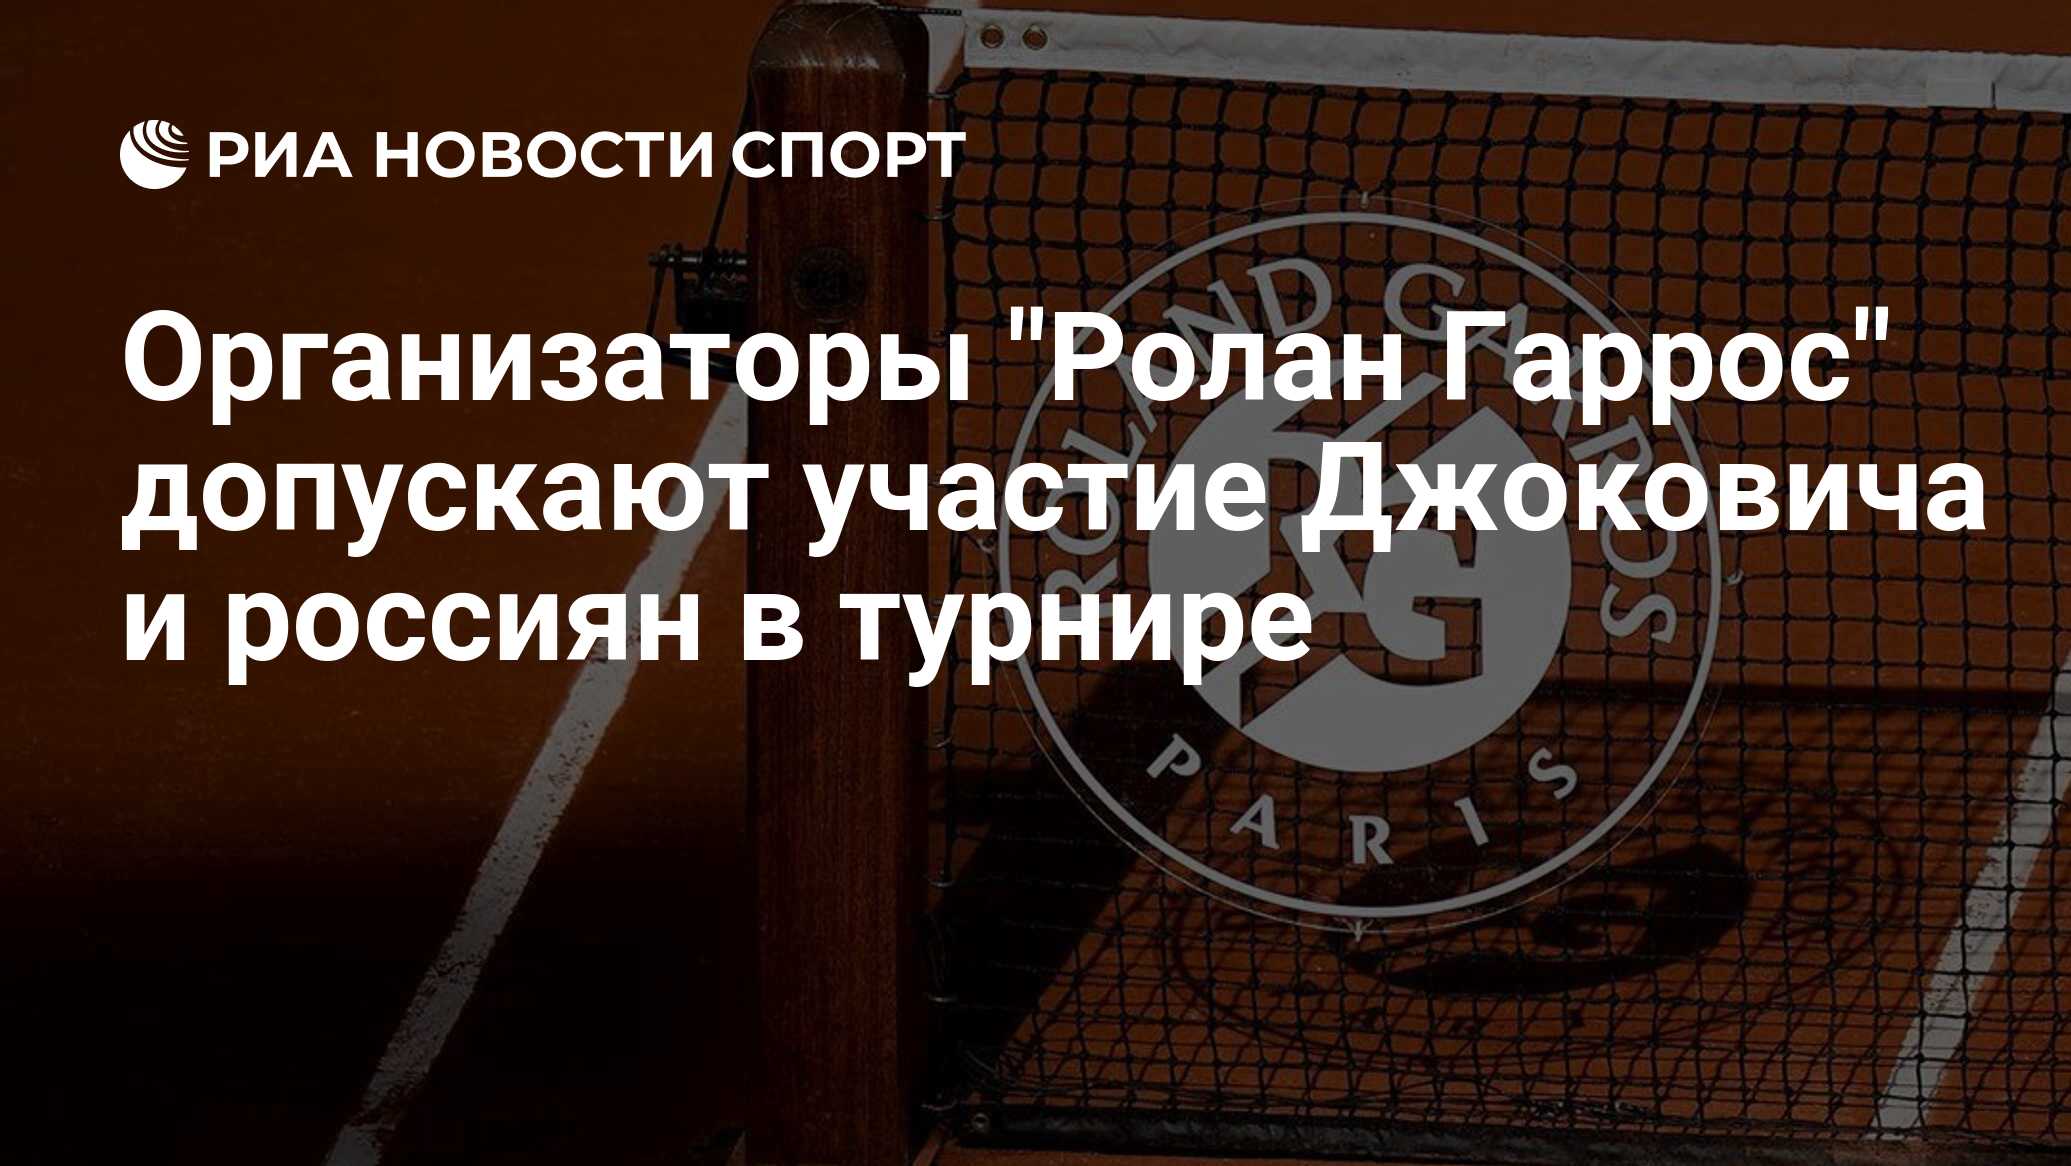 Организаторы "Ролан Гаррос" допускают участие Джоковича и россиян в турнире